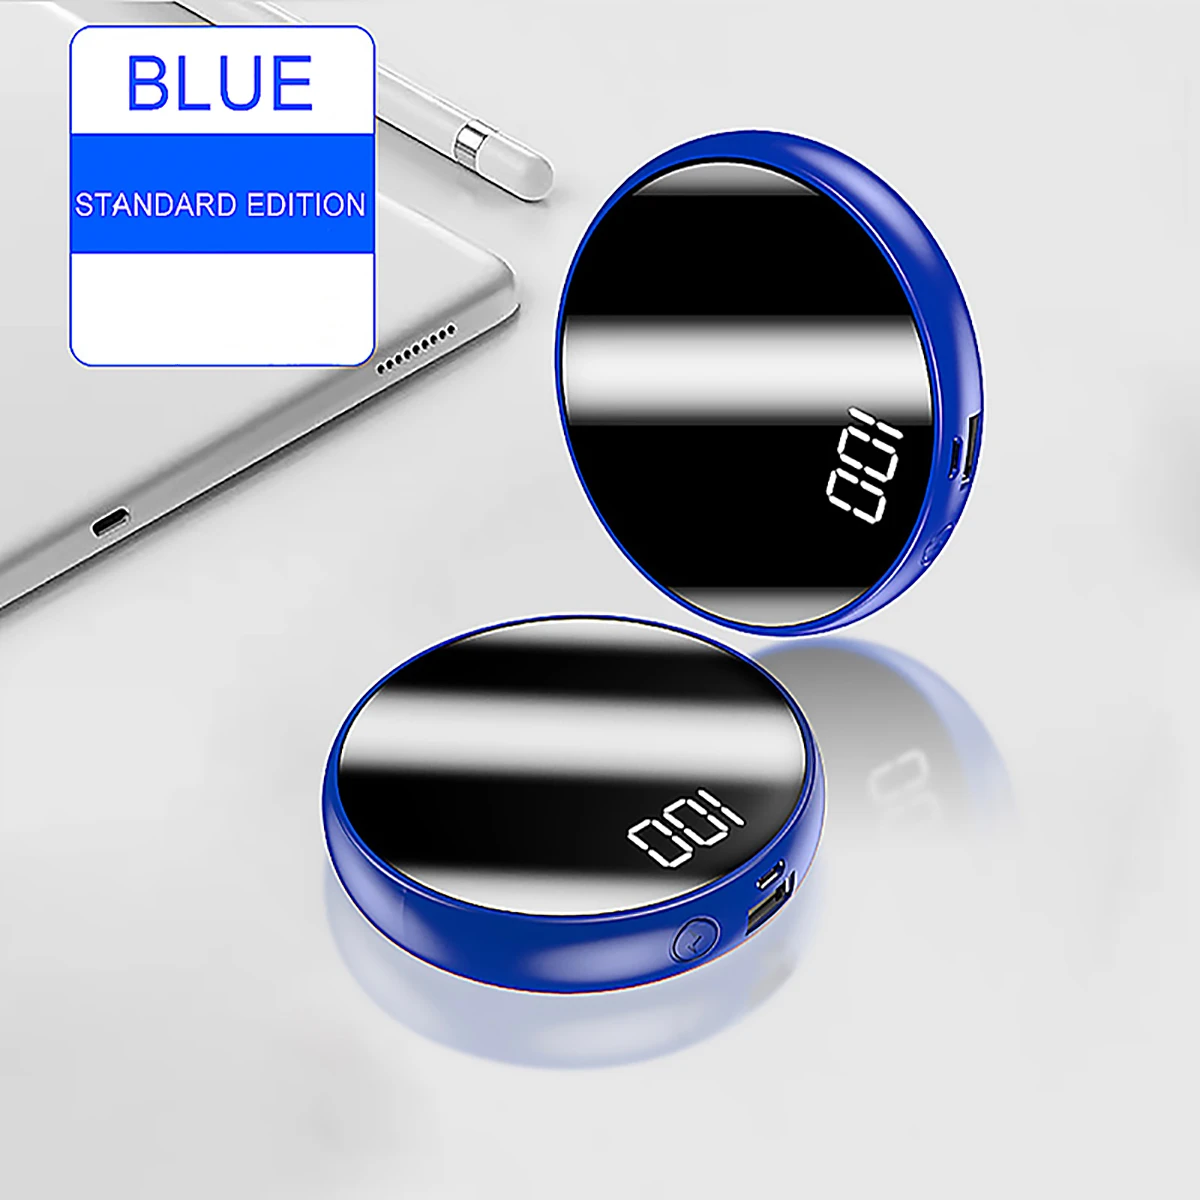 Мини Быстрая зарядка сокровище круглое зеркало полный экран цифровой дисплей Зарядка сокровище для IPhone просо Быстрая зарядка сокровище - Цвет: Blue 4500mAH